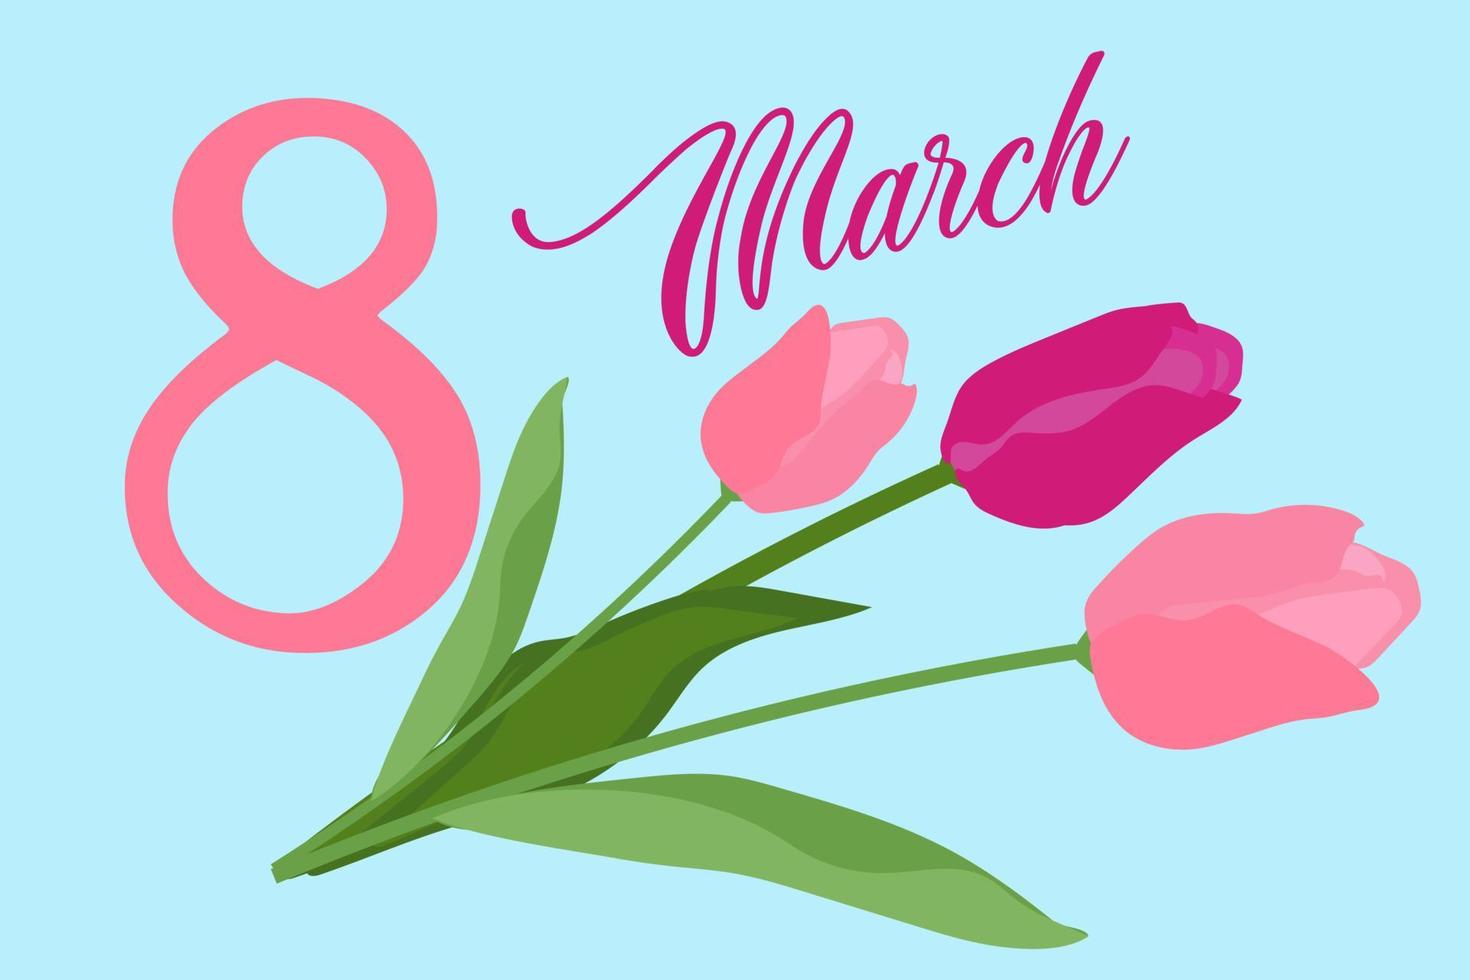 maart 8 groet kaart in teder roze kleuren, vlak hand- getrokken ontwerp met tulp bloemen. vector